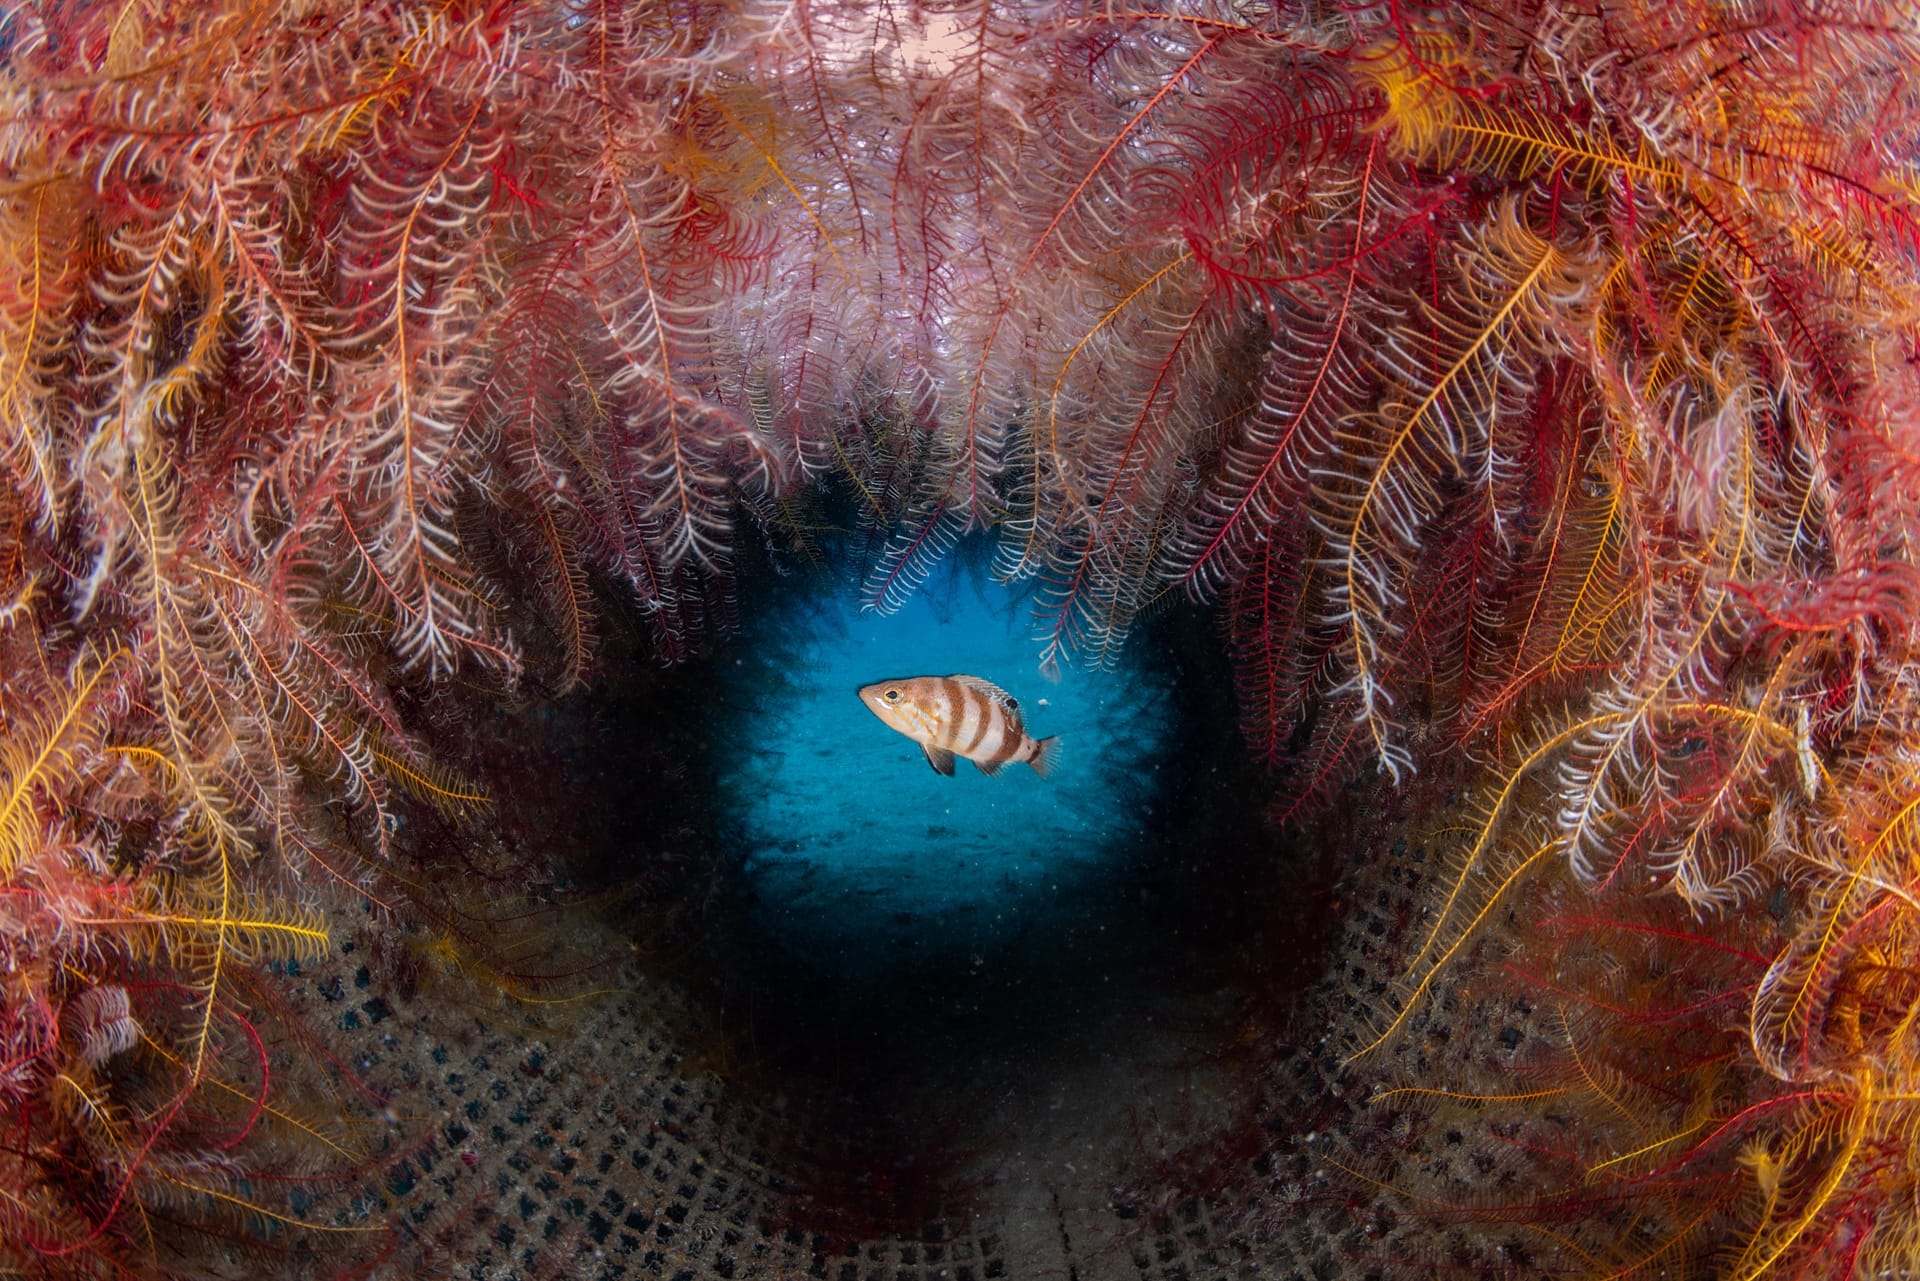 Pietro Formis, underwater photographer